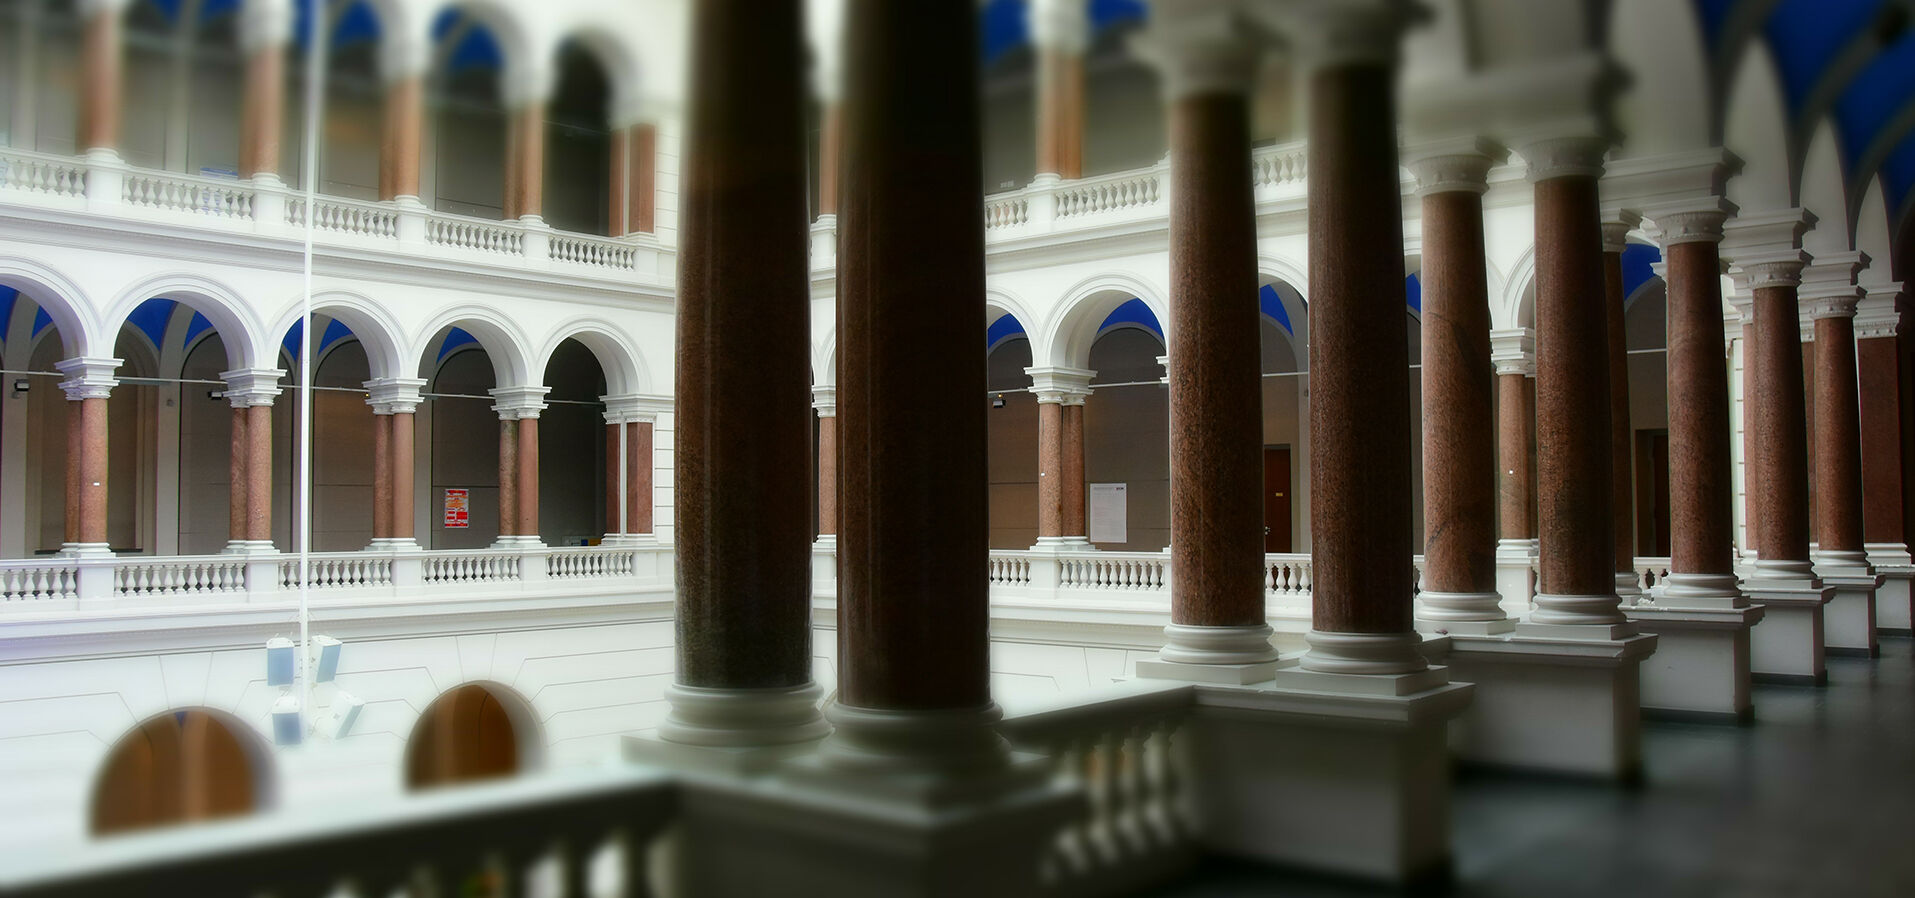 Lichthof über drei Etagen mit umlaufenden Säulengängen aus roten Granitsäulen mit weißem Abschluss oben und unten, Gangdecke blau gestrichen